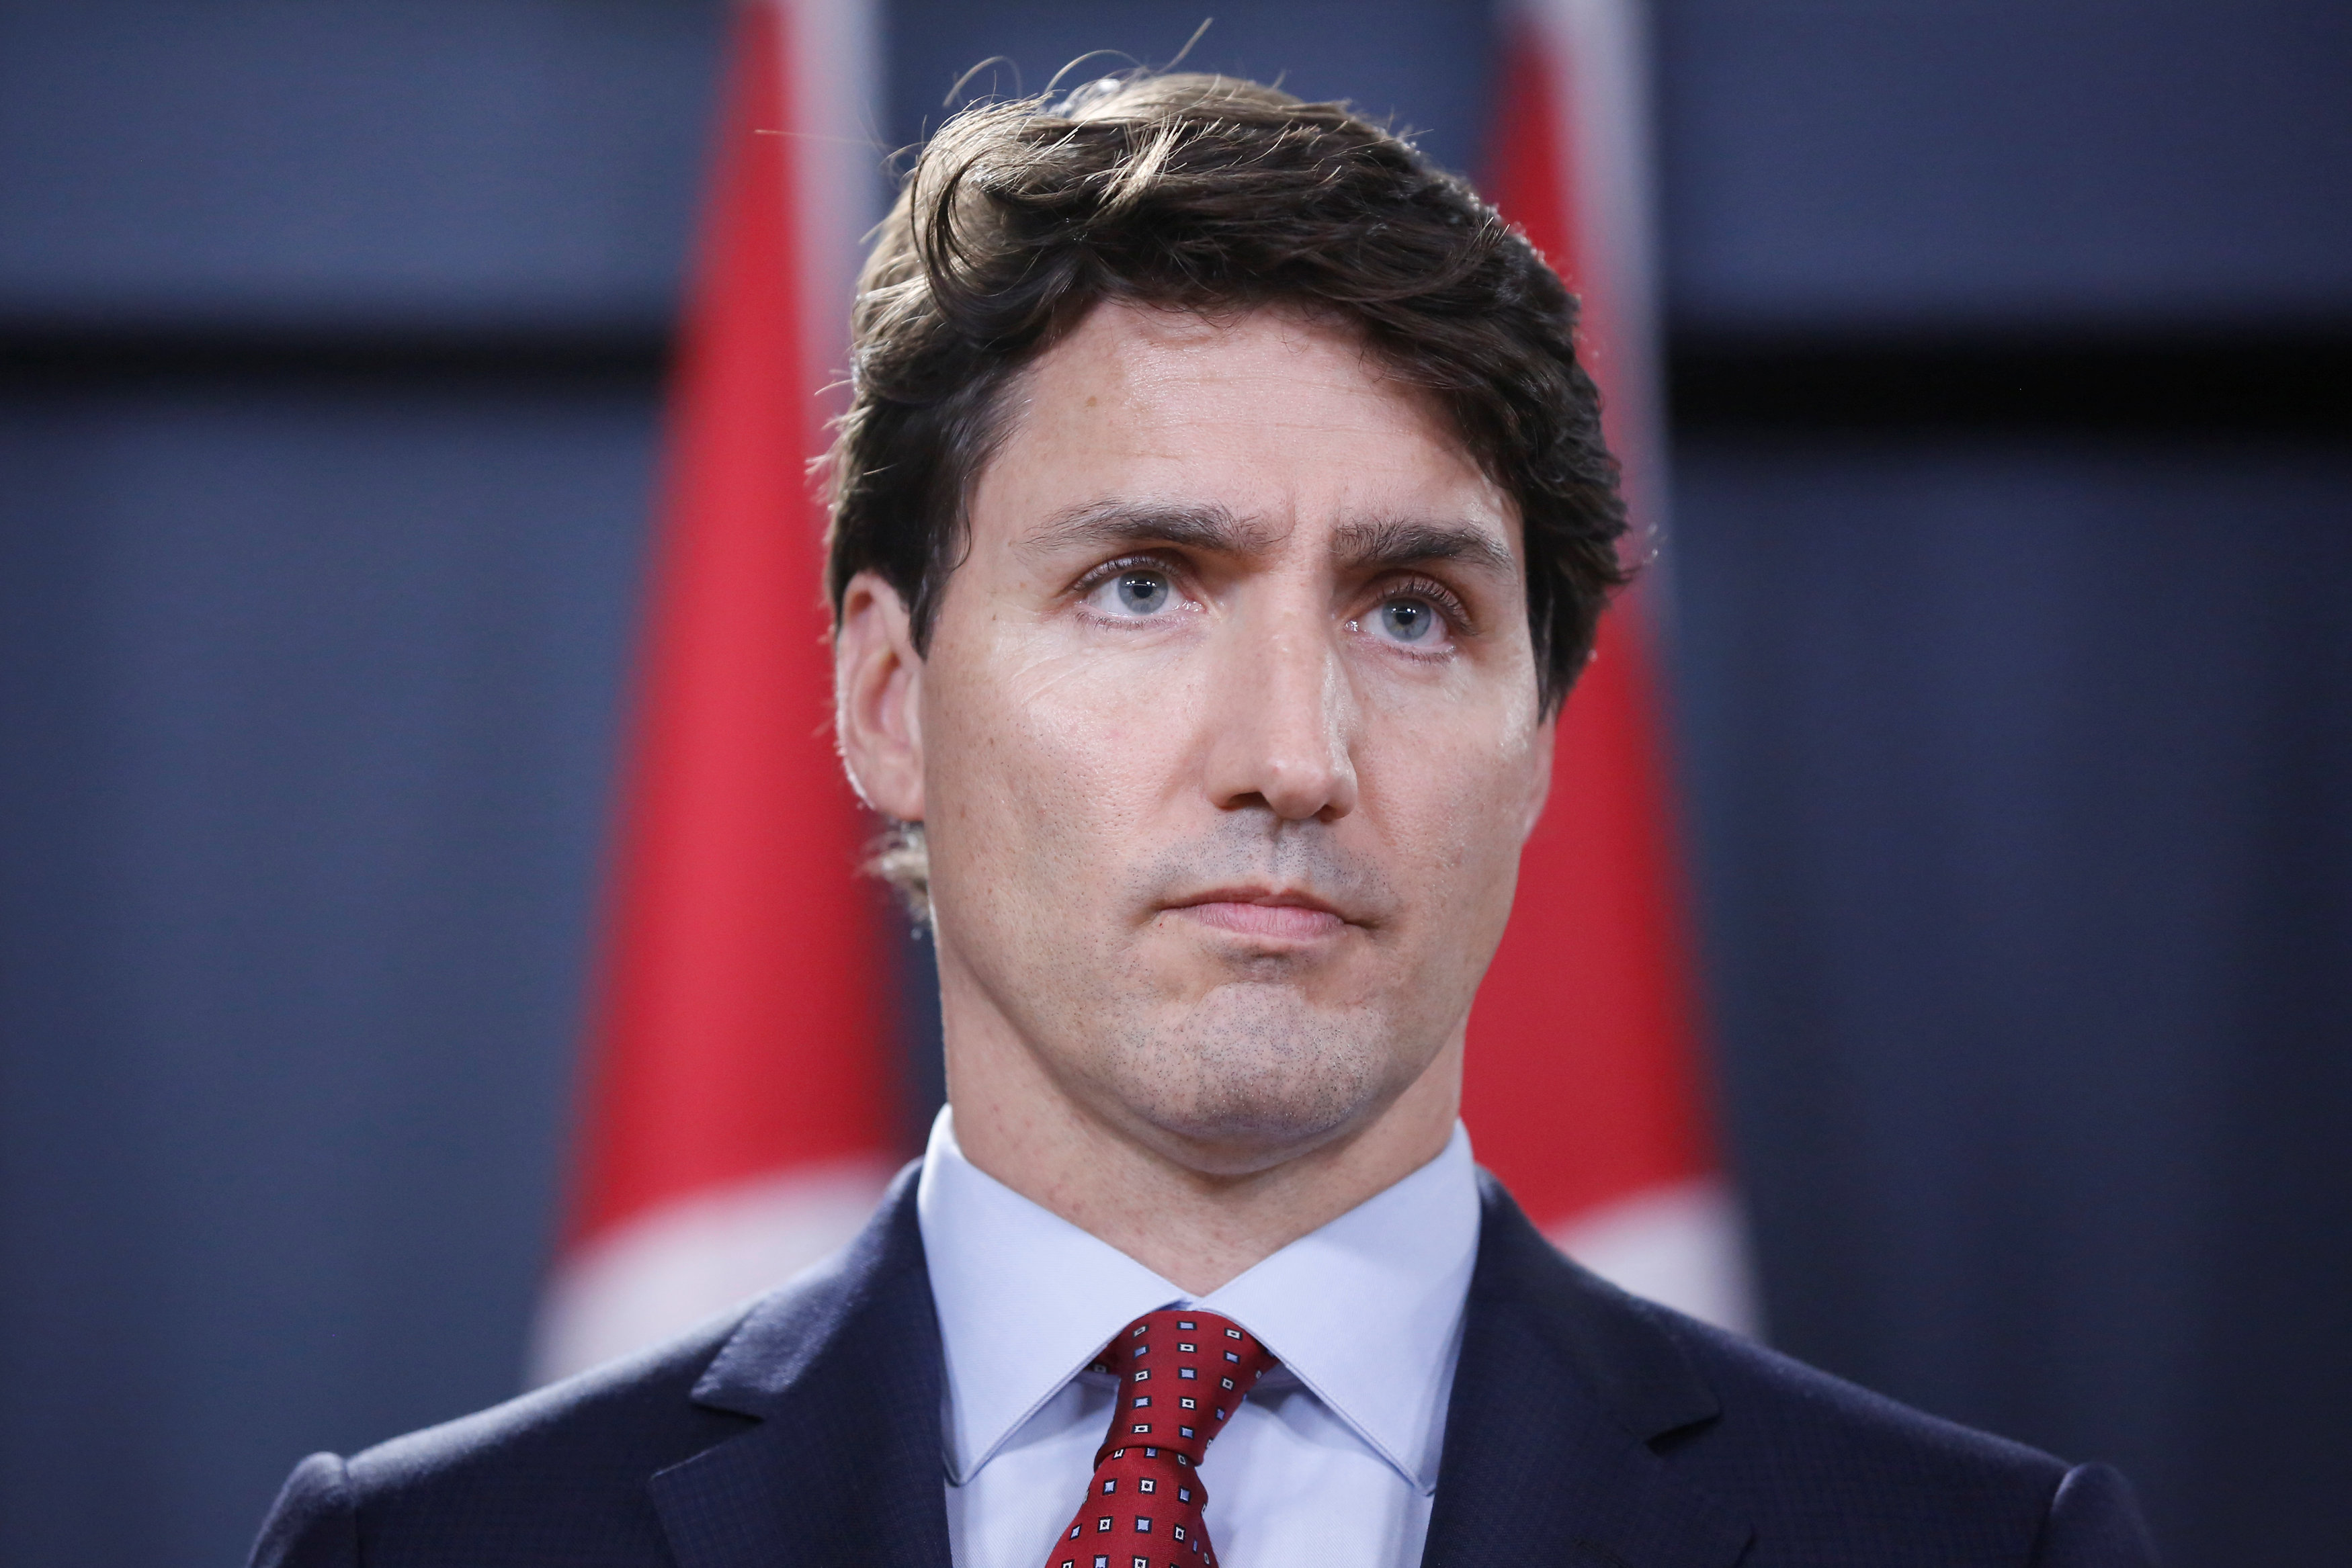 Separación de familias migrantes en EU "está mal" y es "inaceptable": Trudeau